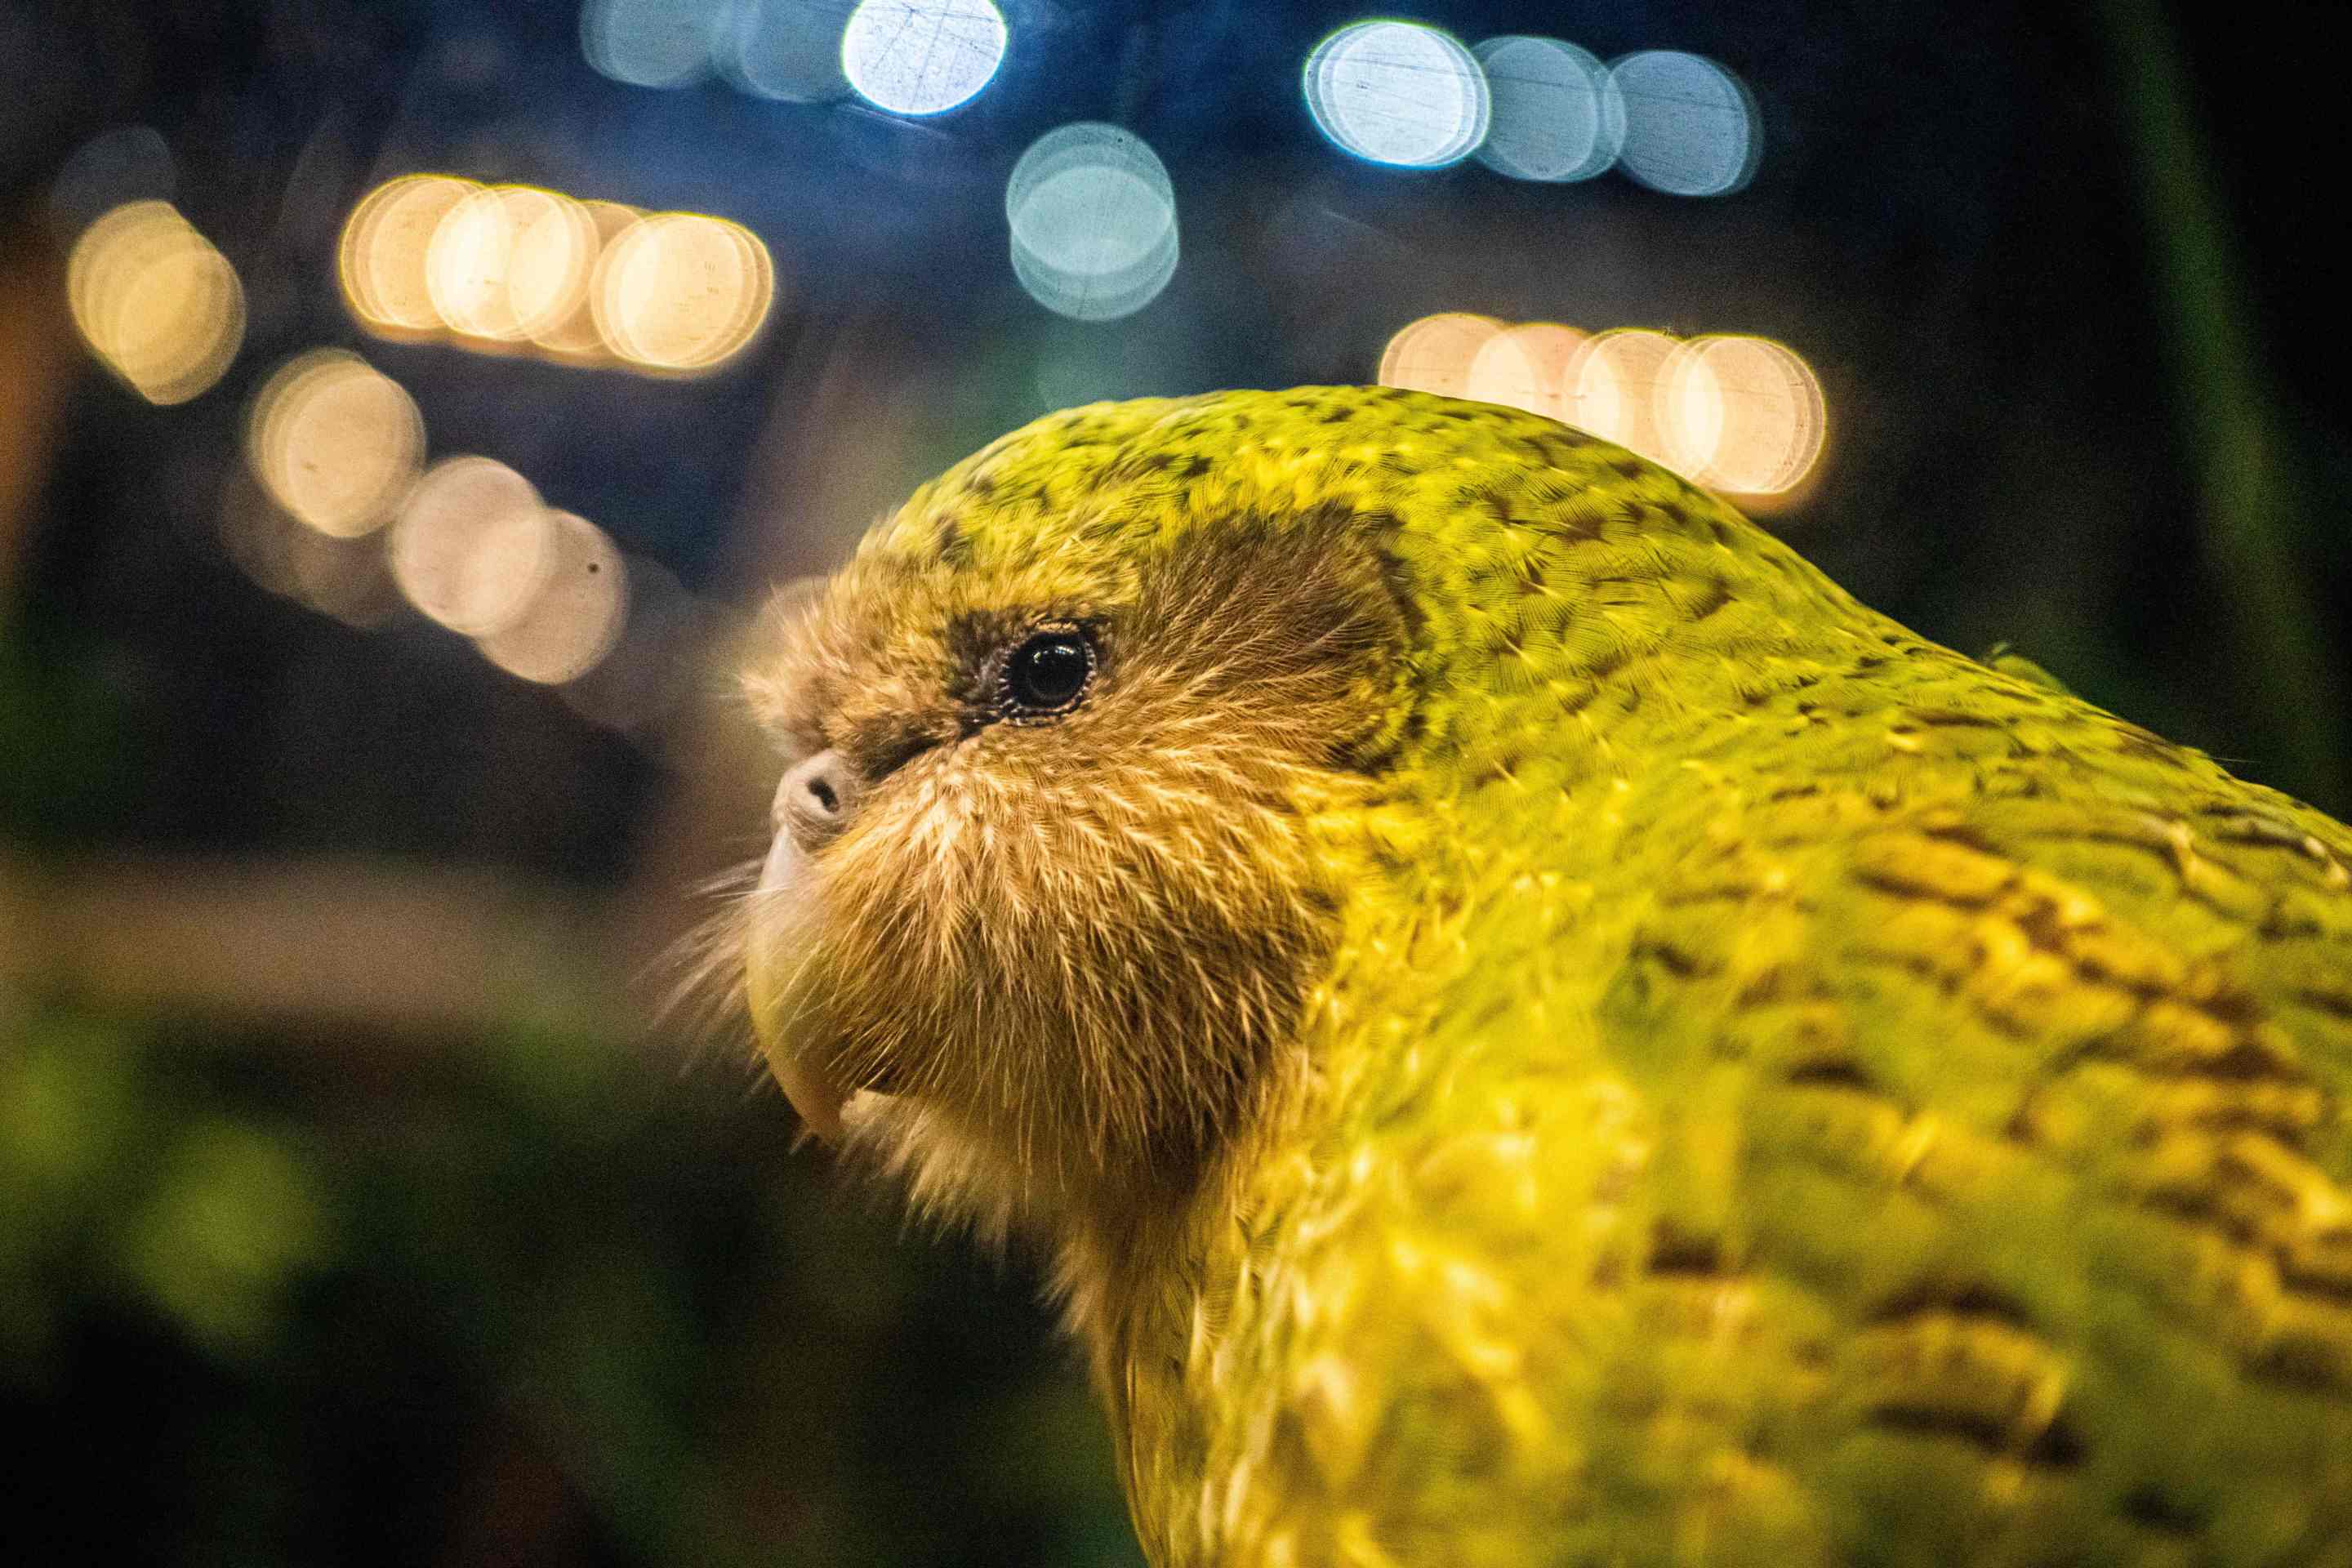 a Kakapo named Sirocco exhibited at the Orokonui Ecosanctuary in Dunedin, New Zealand